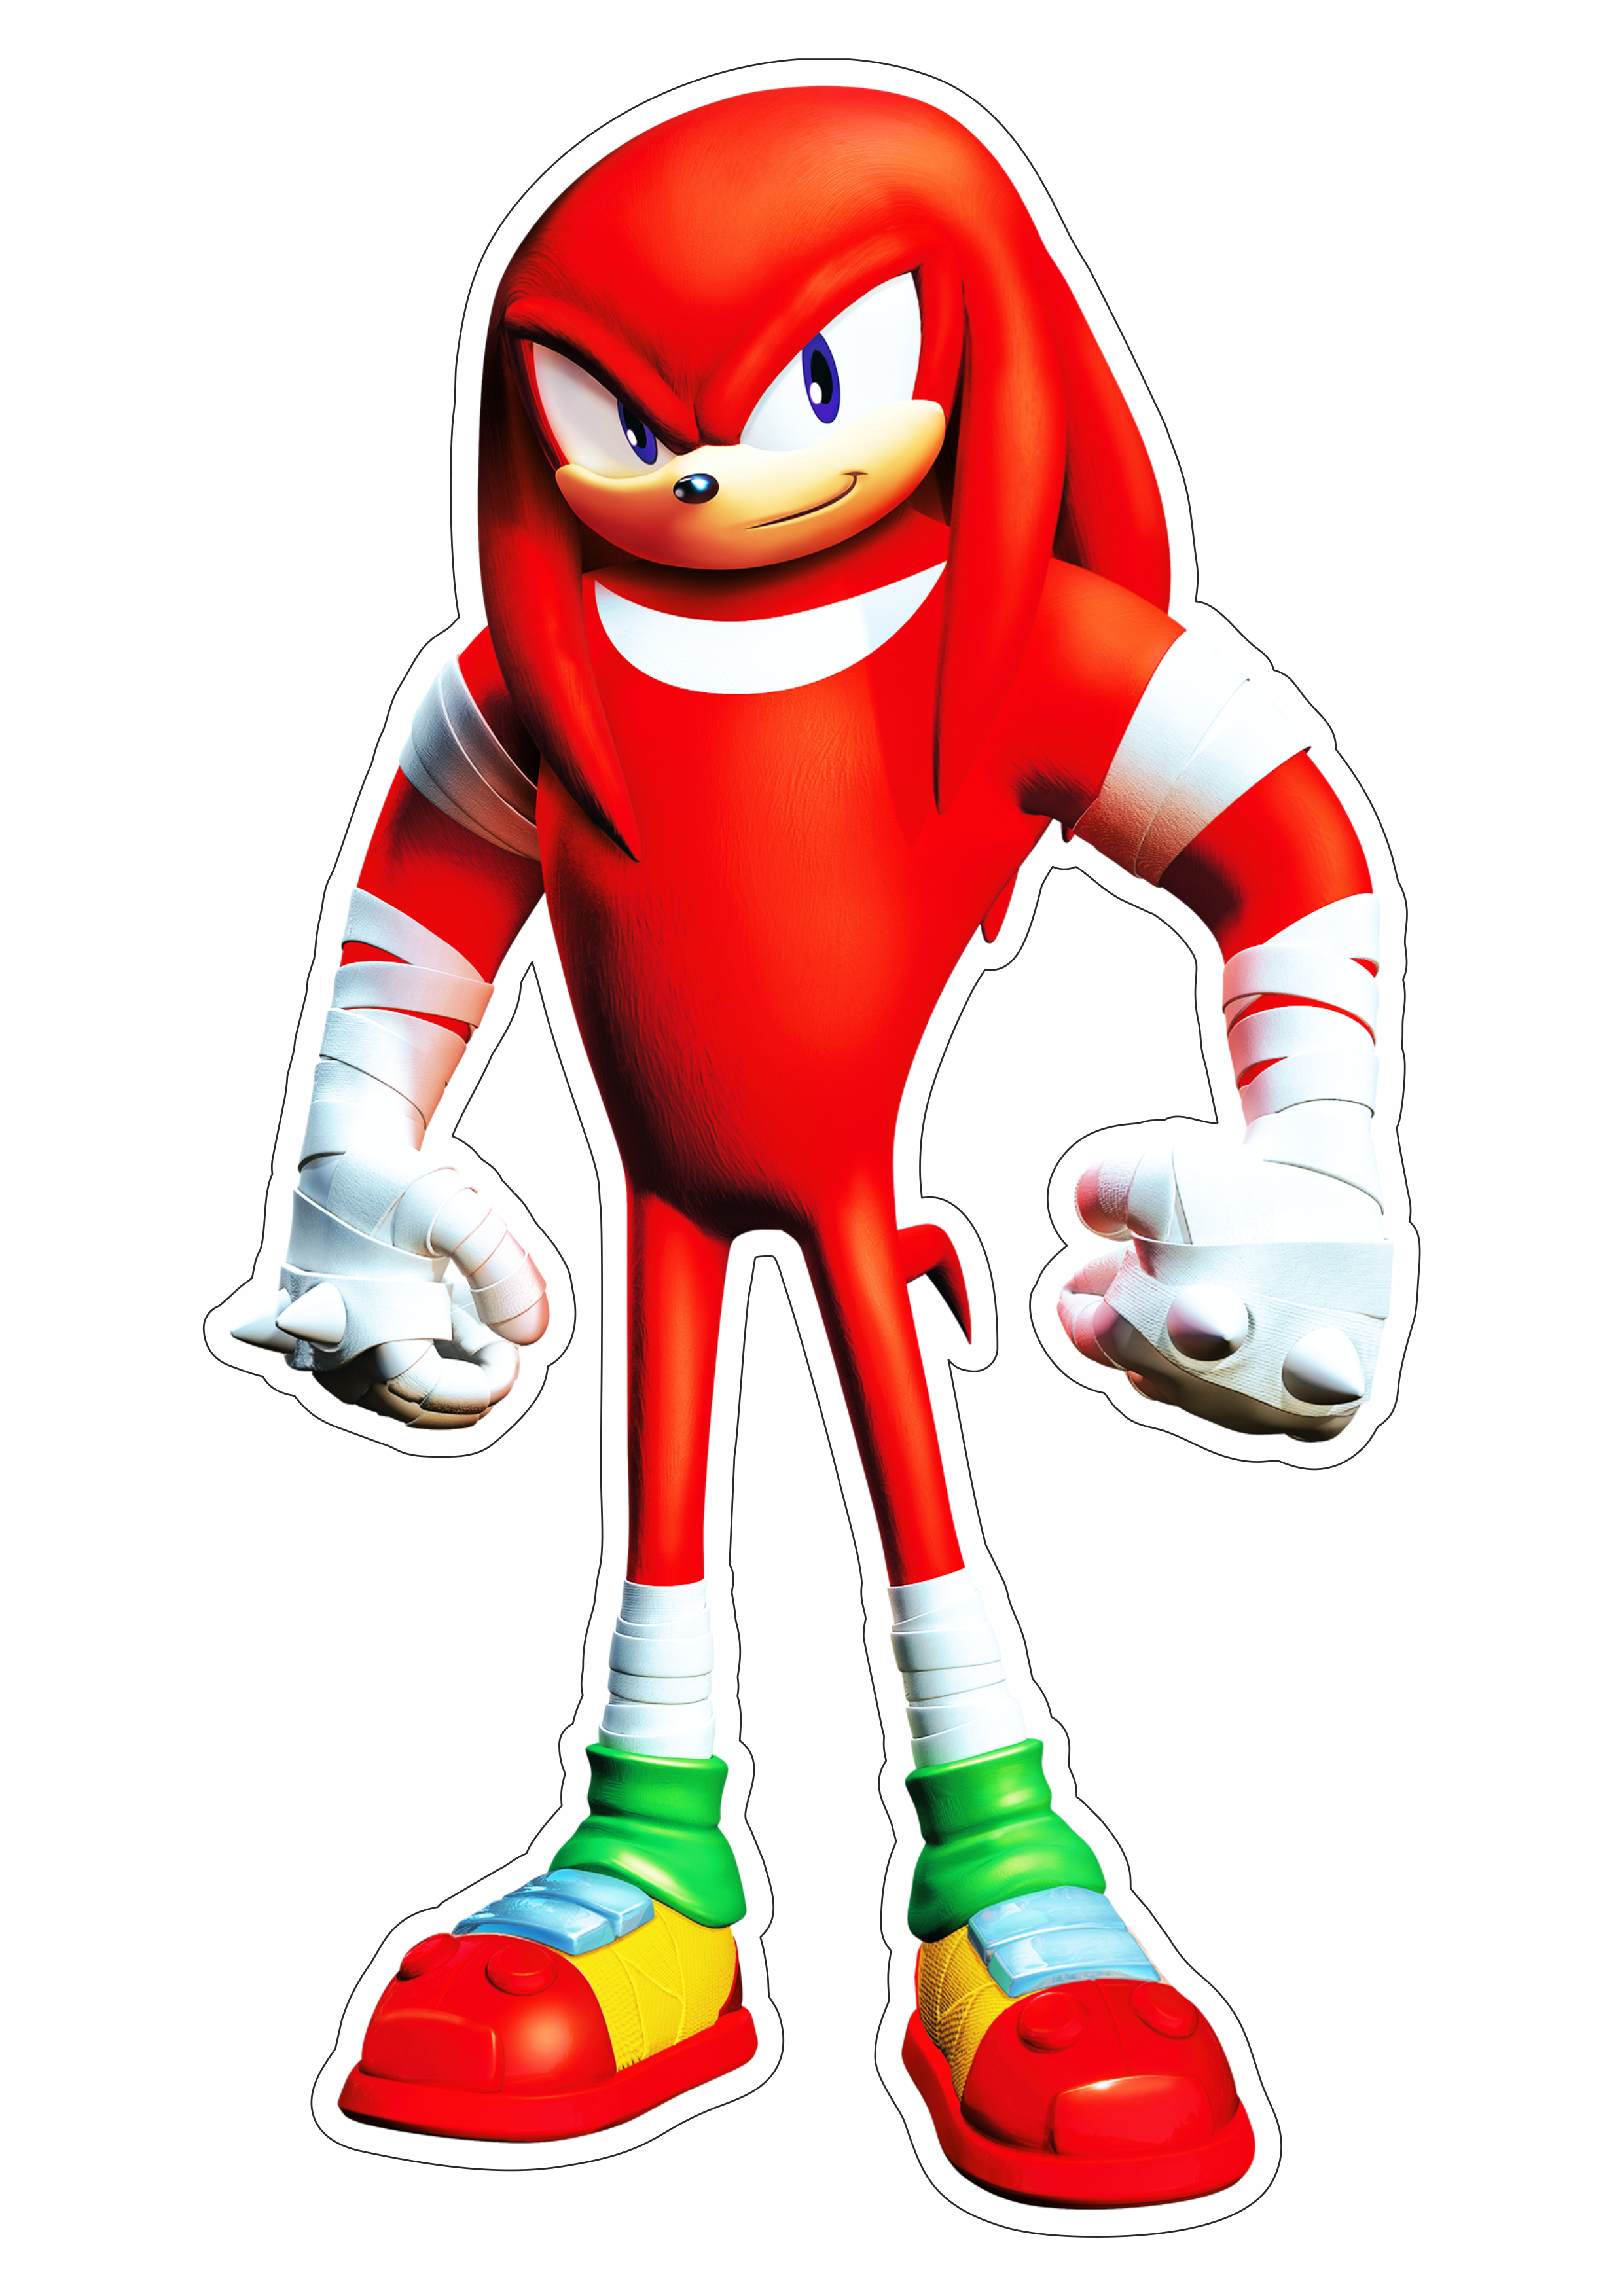 Knuckles Sonic the hedgehog personagem de game fundo transparente com contorno png